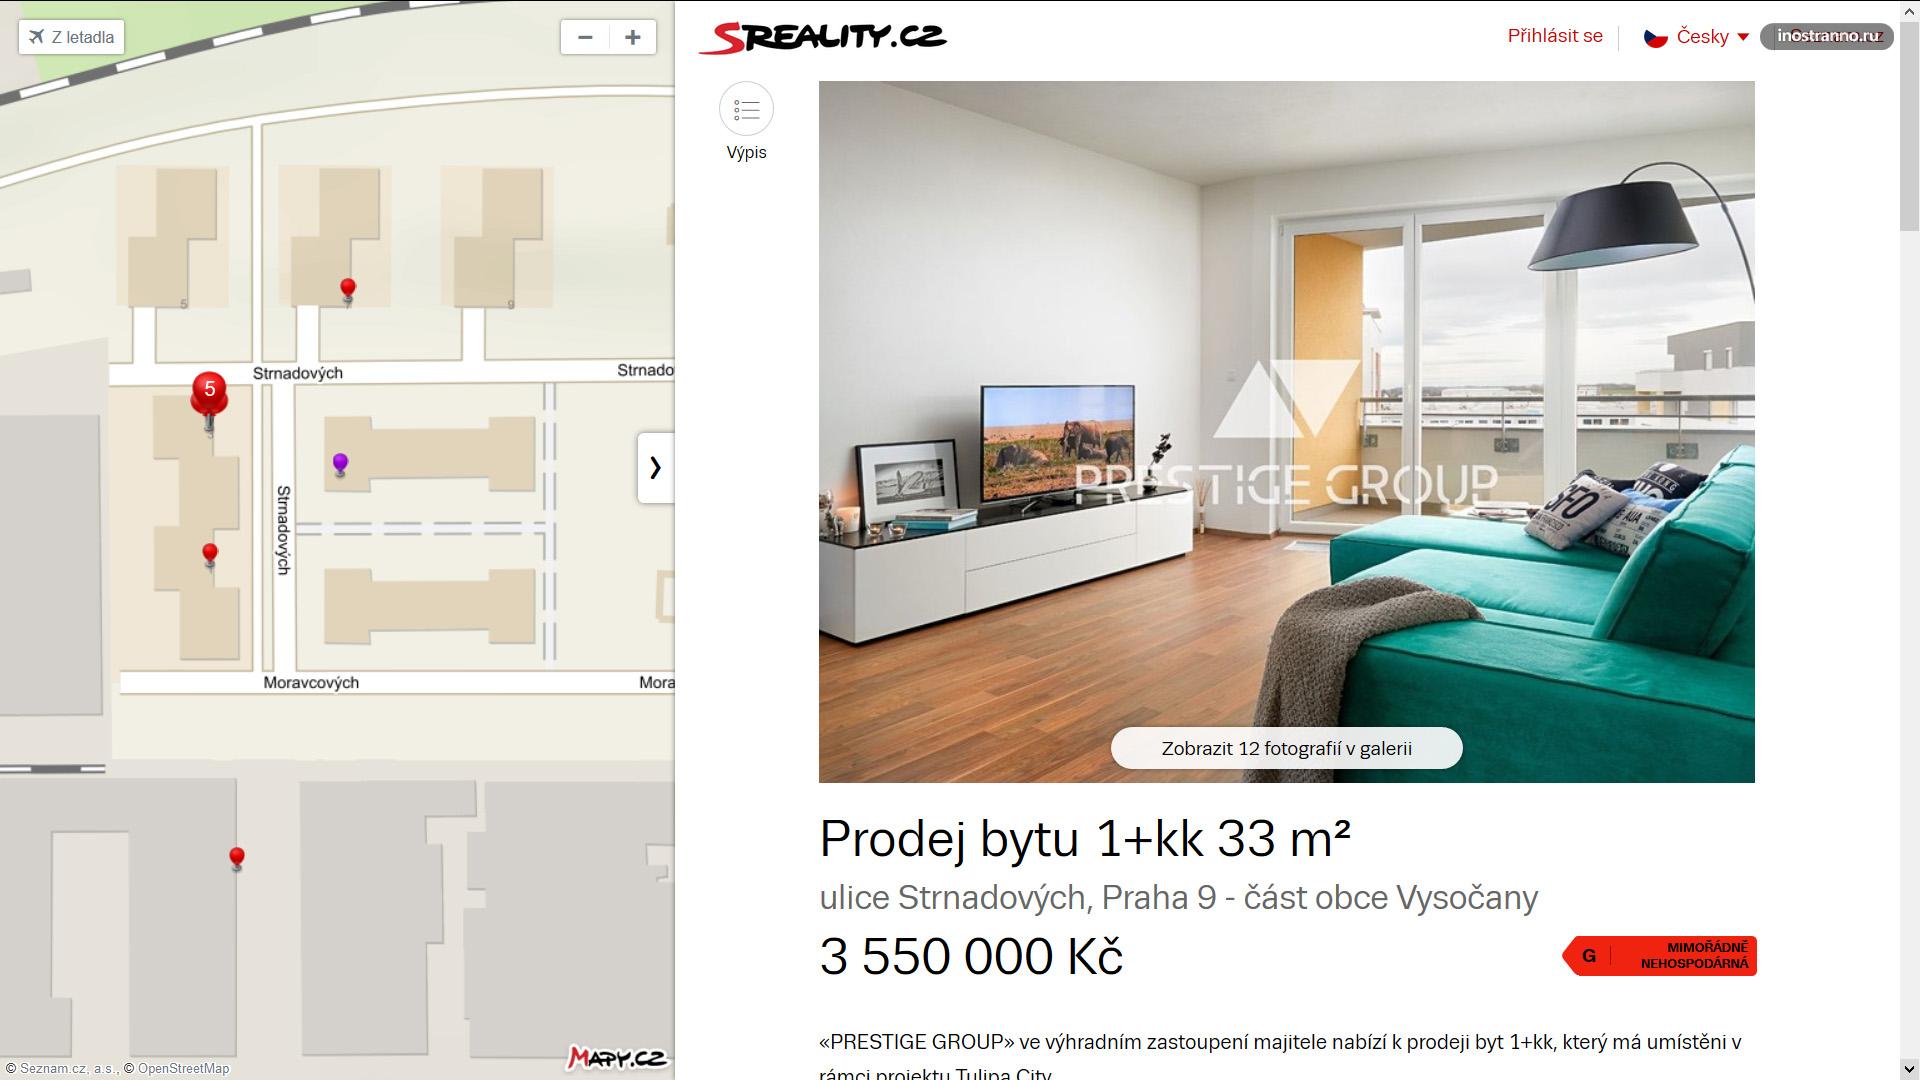 Цена однокомнатной квартиры в Праге новостройка